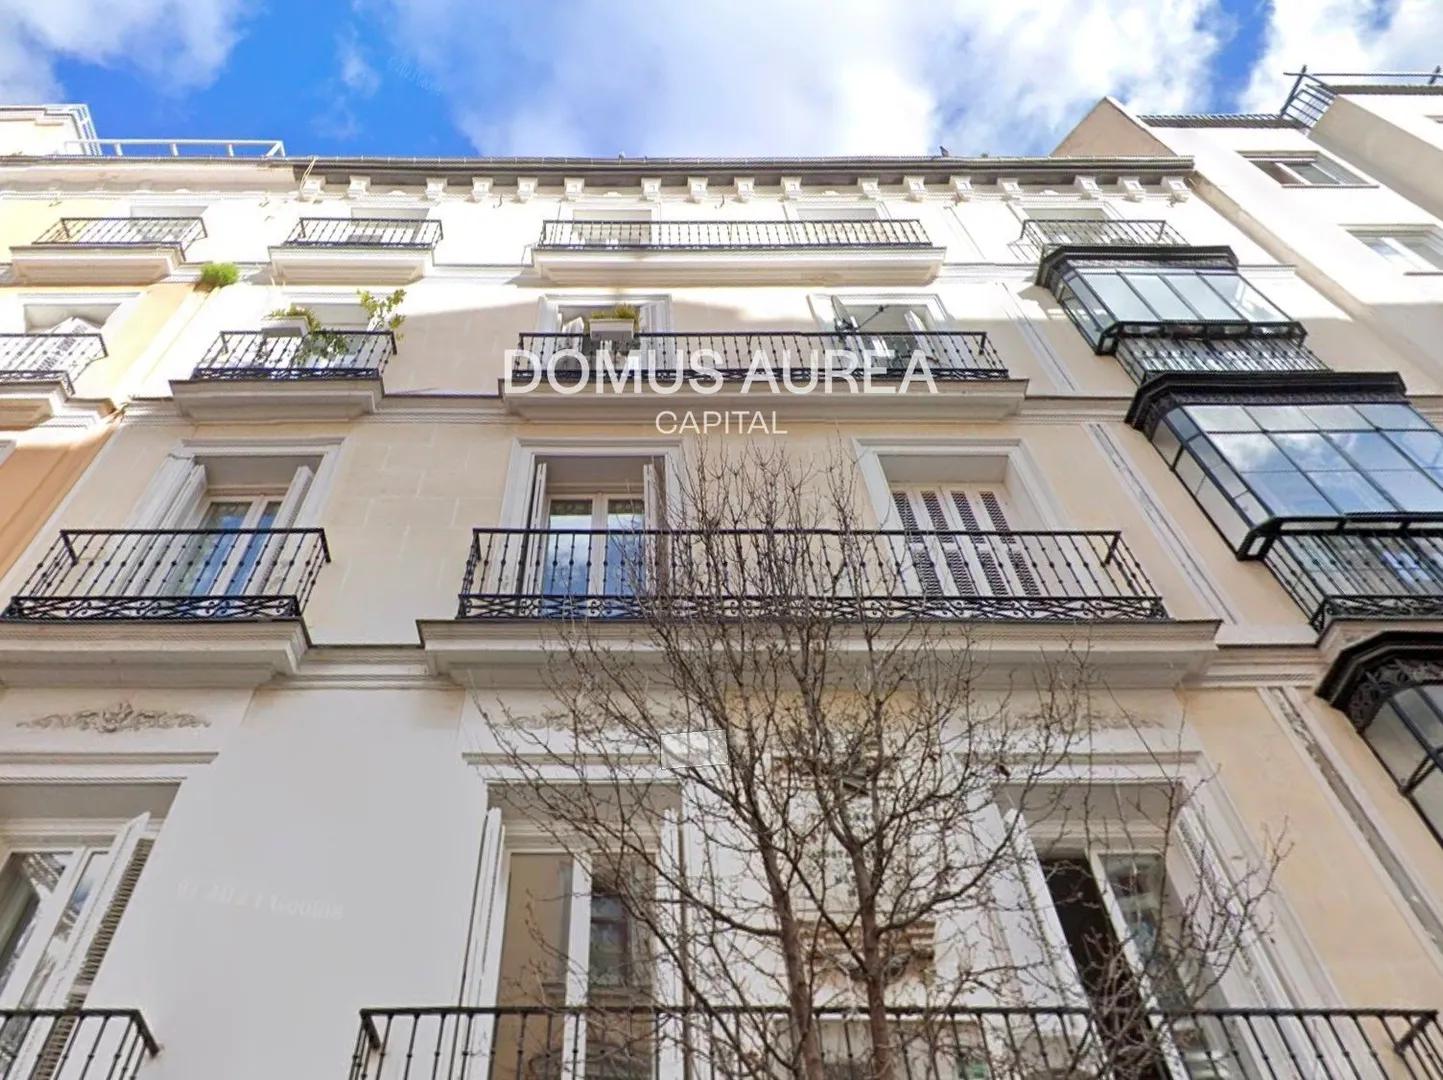 Vivienda a reformar con balcones y mirador cerca de Serrano y Puerta de Alcalá